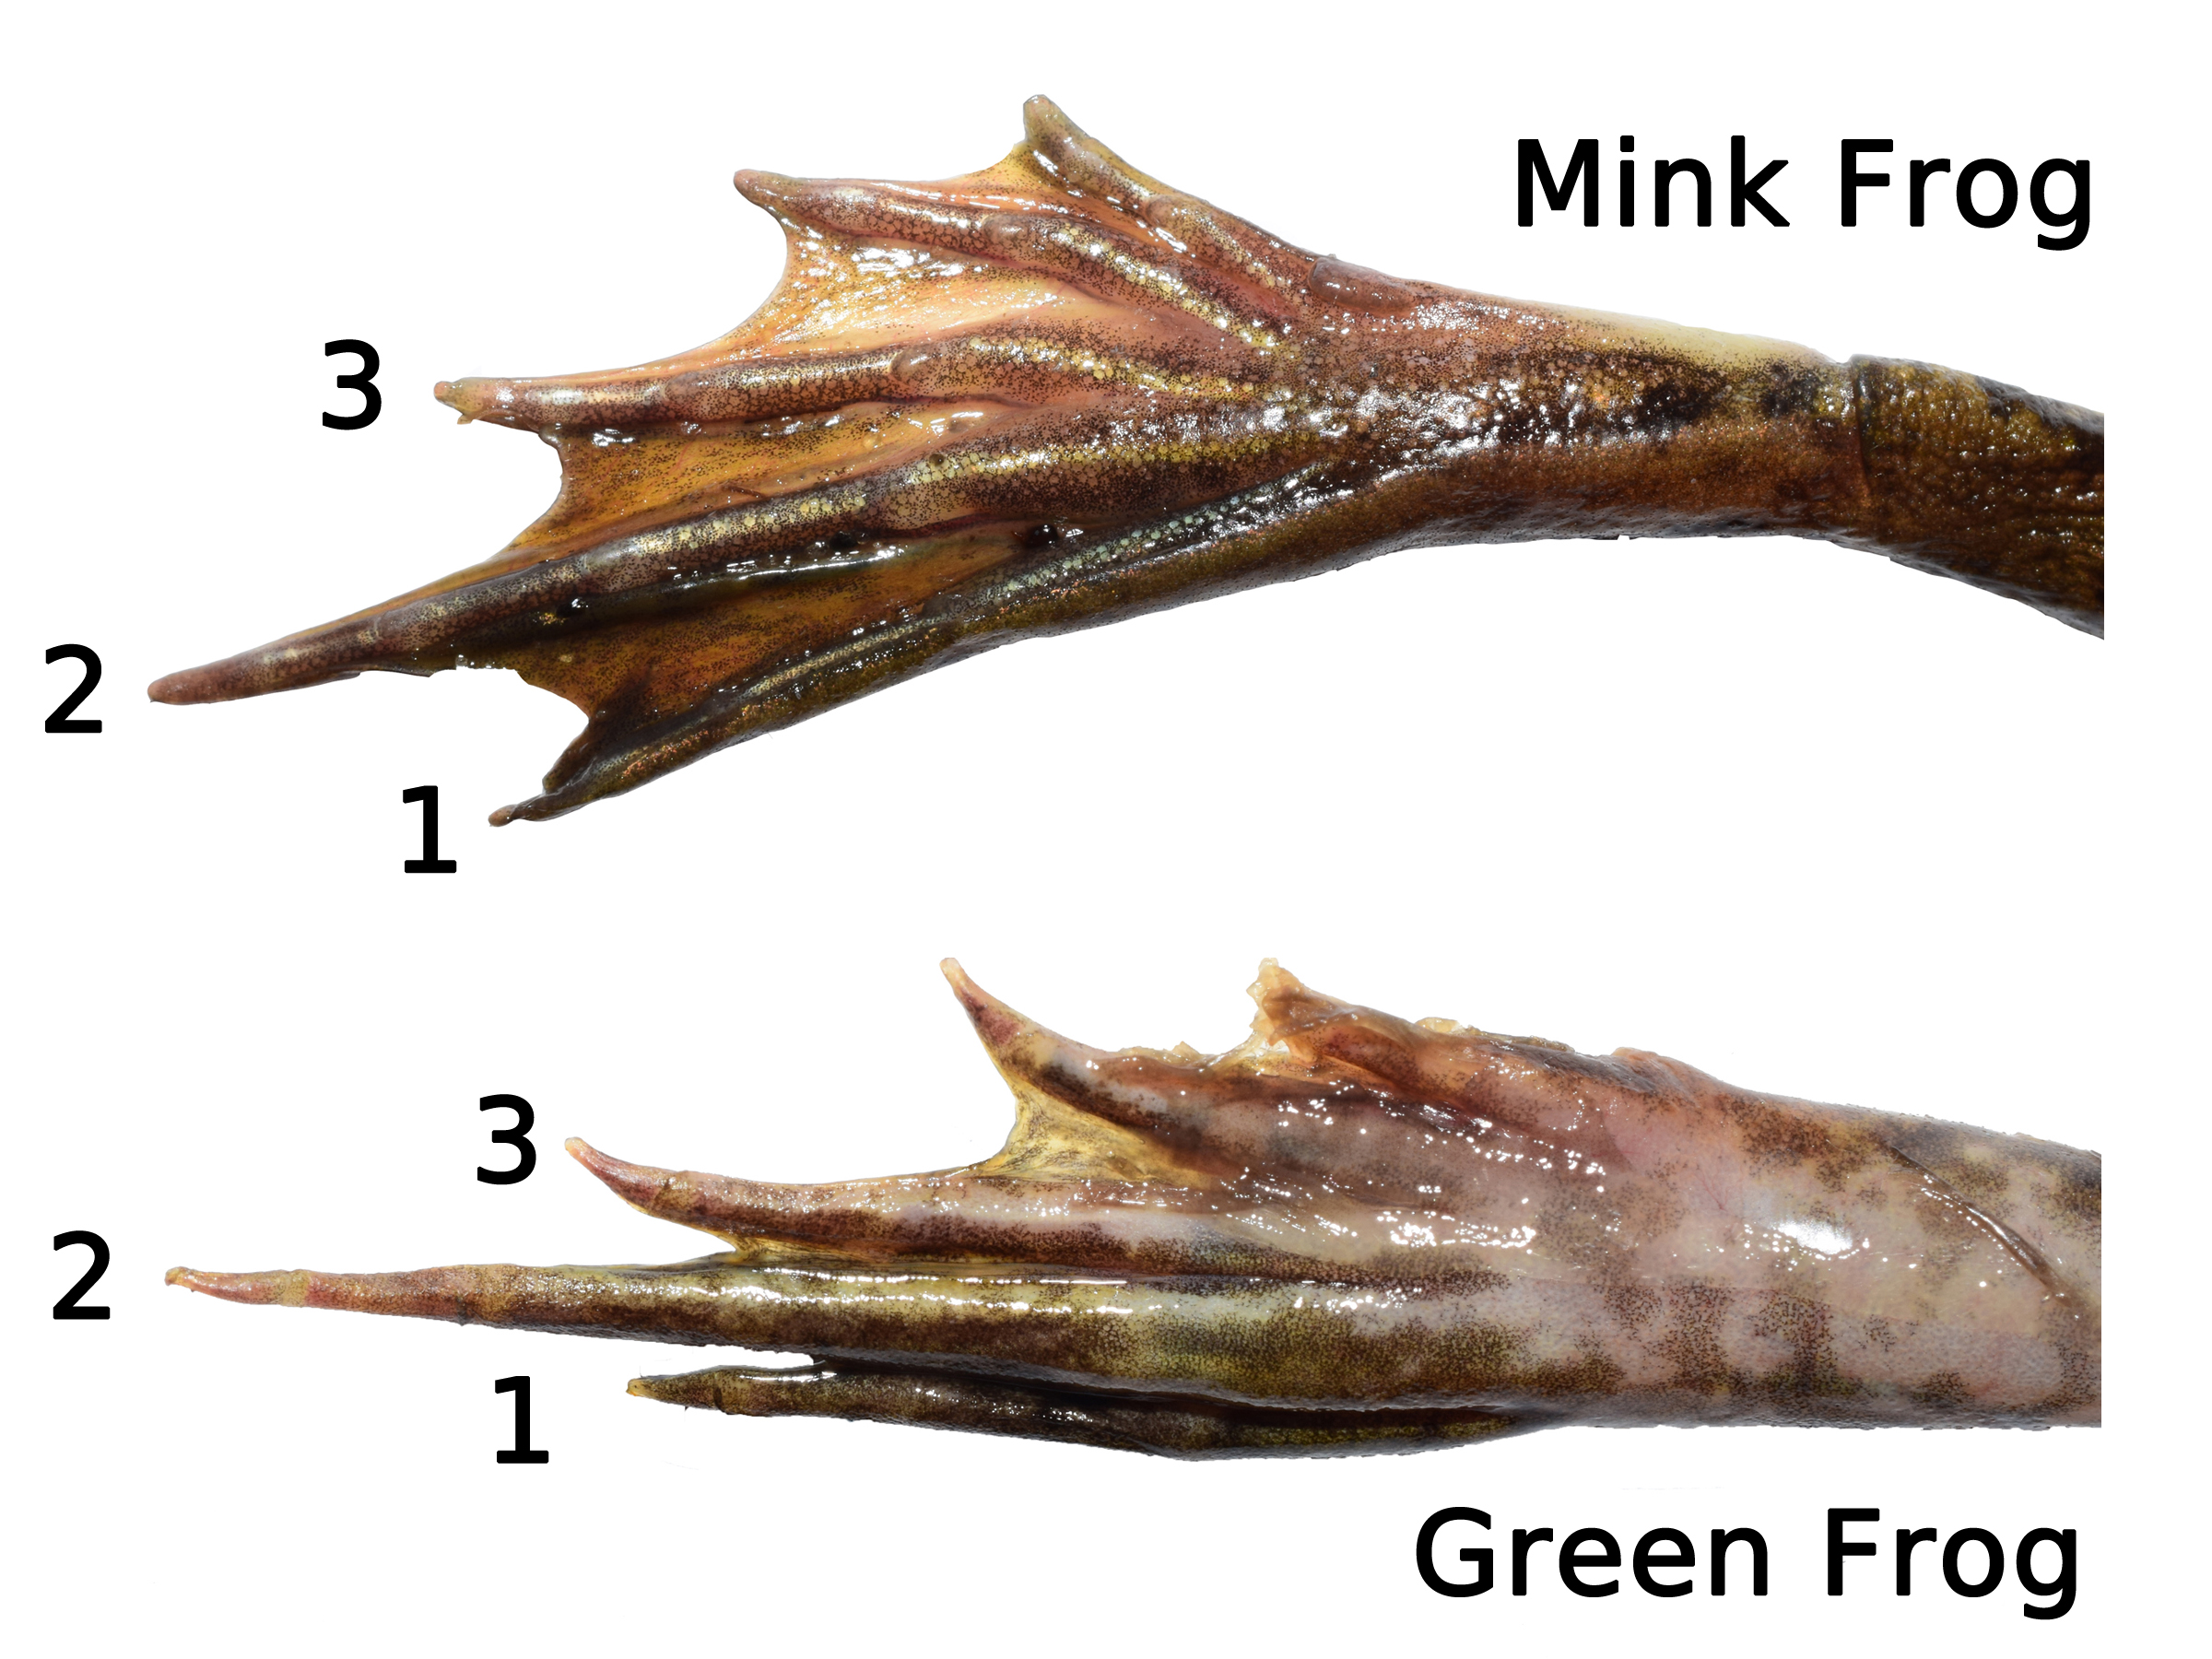 图3。貂蛙(上)和绿蛙(下)后腿的比较。注意第三个脚趾和第一个脚趾的长度。明尼苏达州舍本县的水貂蛙和明尼苏达州安诺卡县的绿蛙。